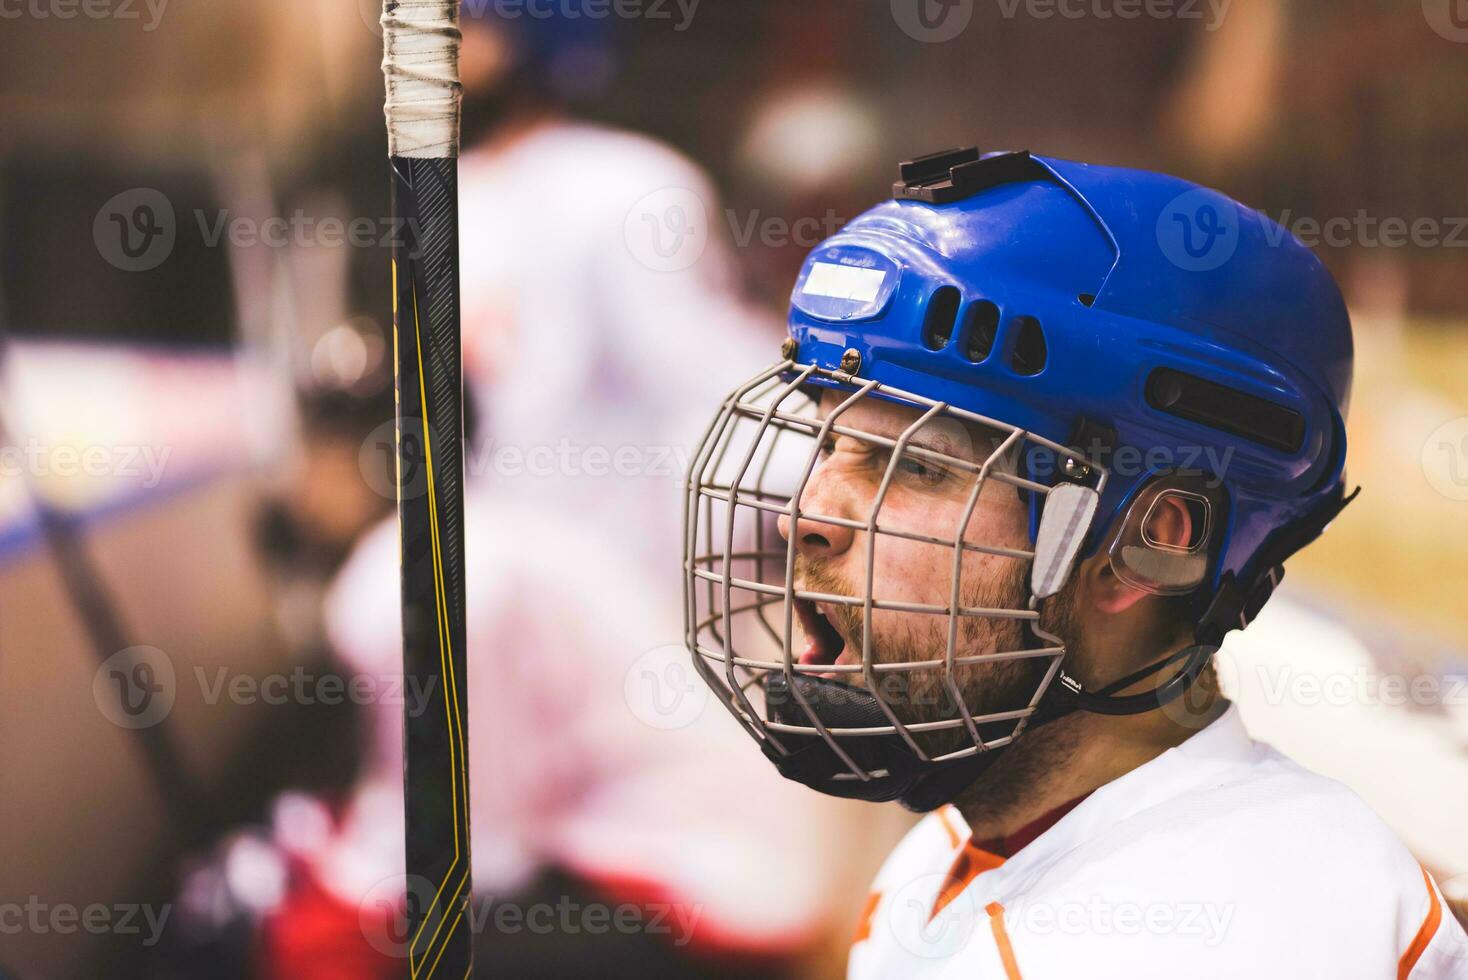 Eishockey Spieler hält schreien seine Mannschaft Sitzung auf das Bank foto